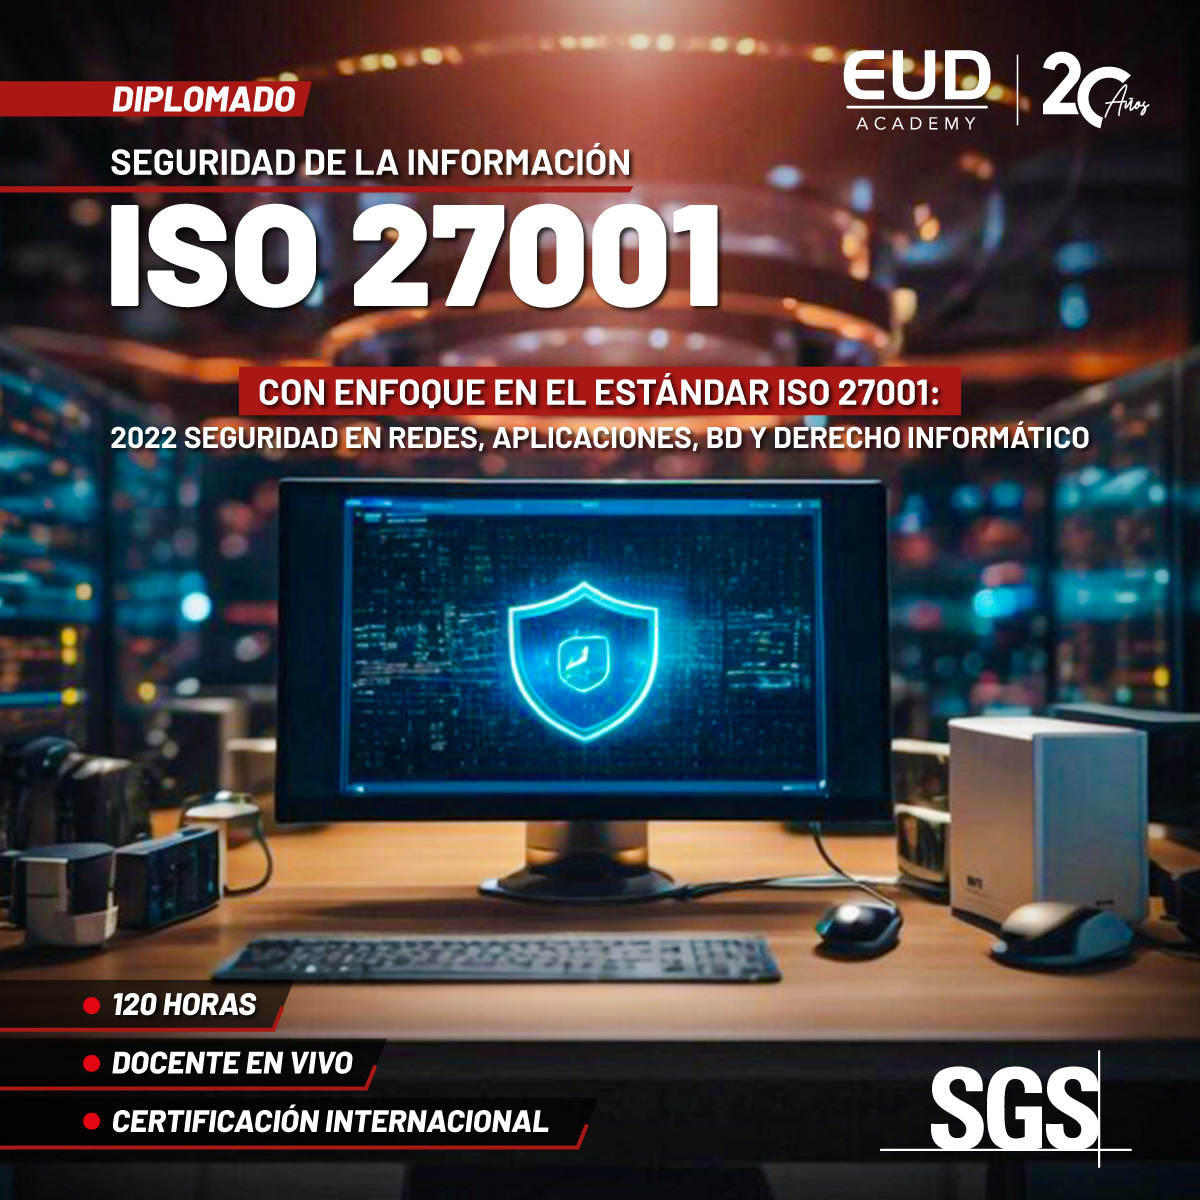 ISO 27001 en EUD Academy